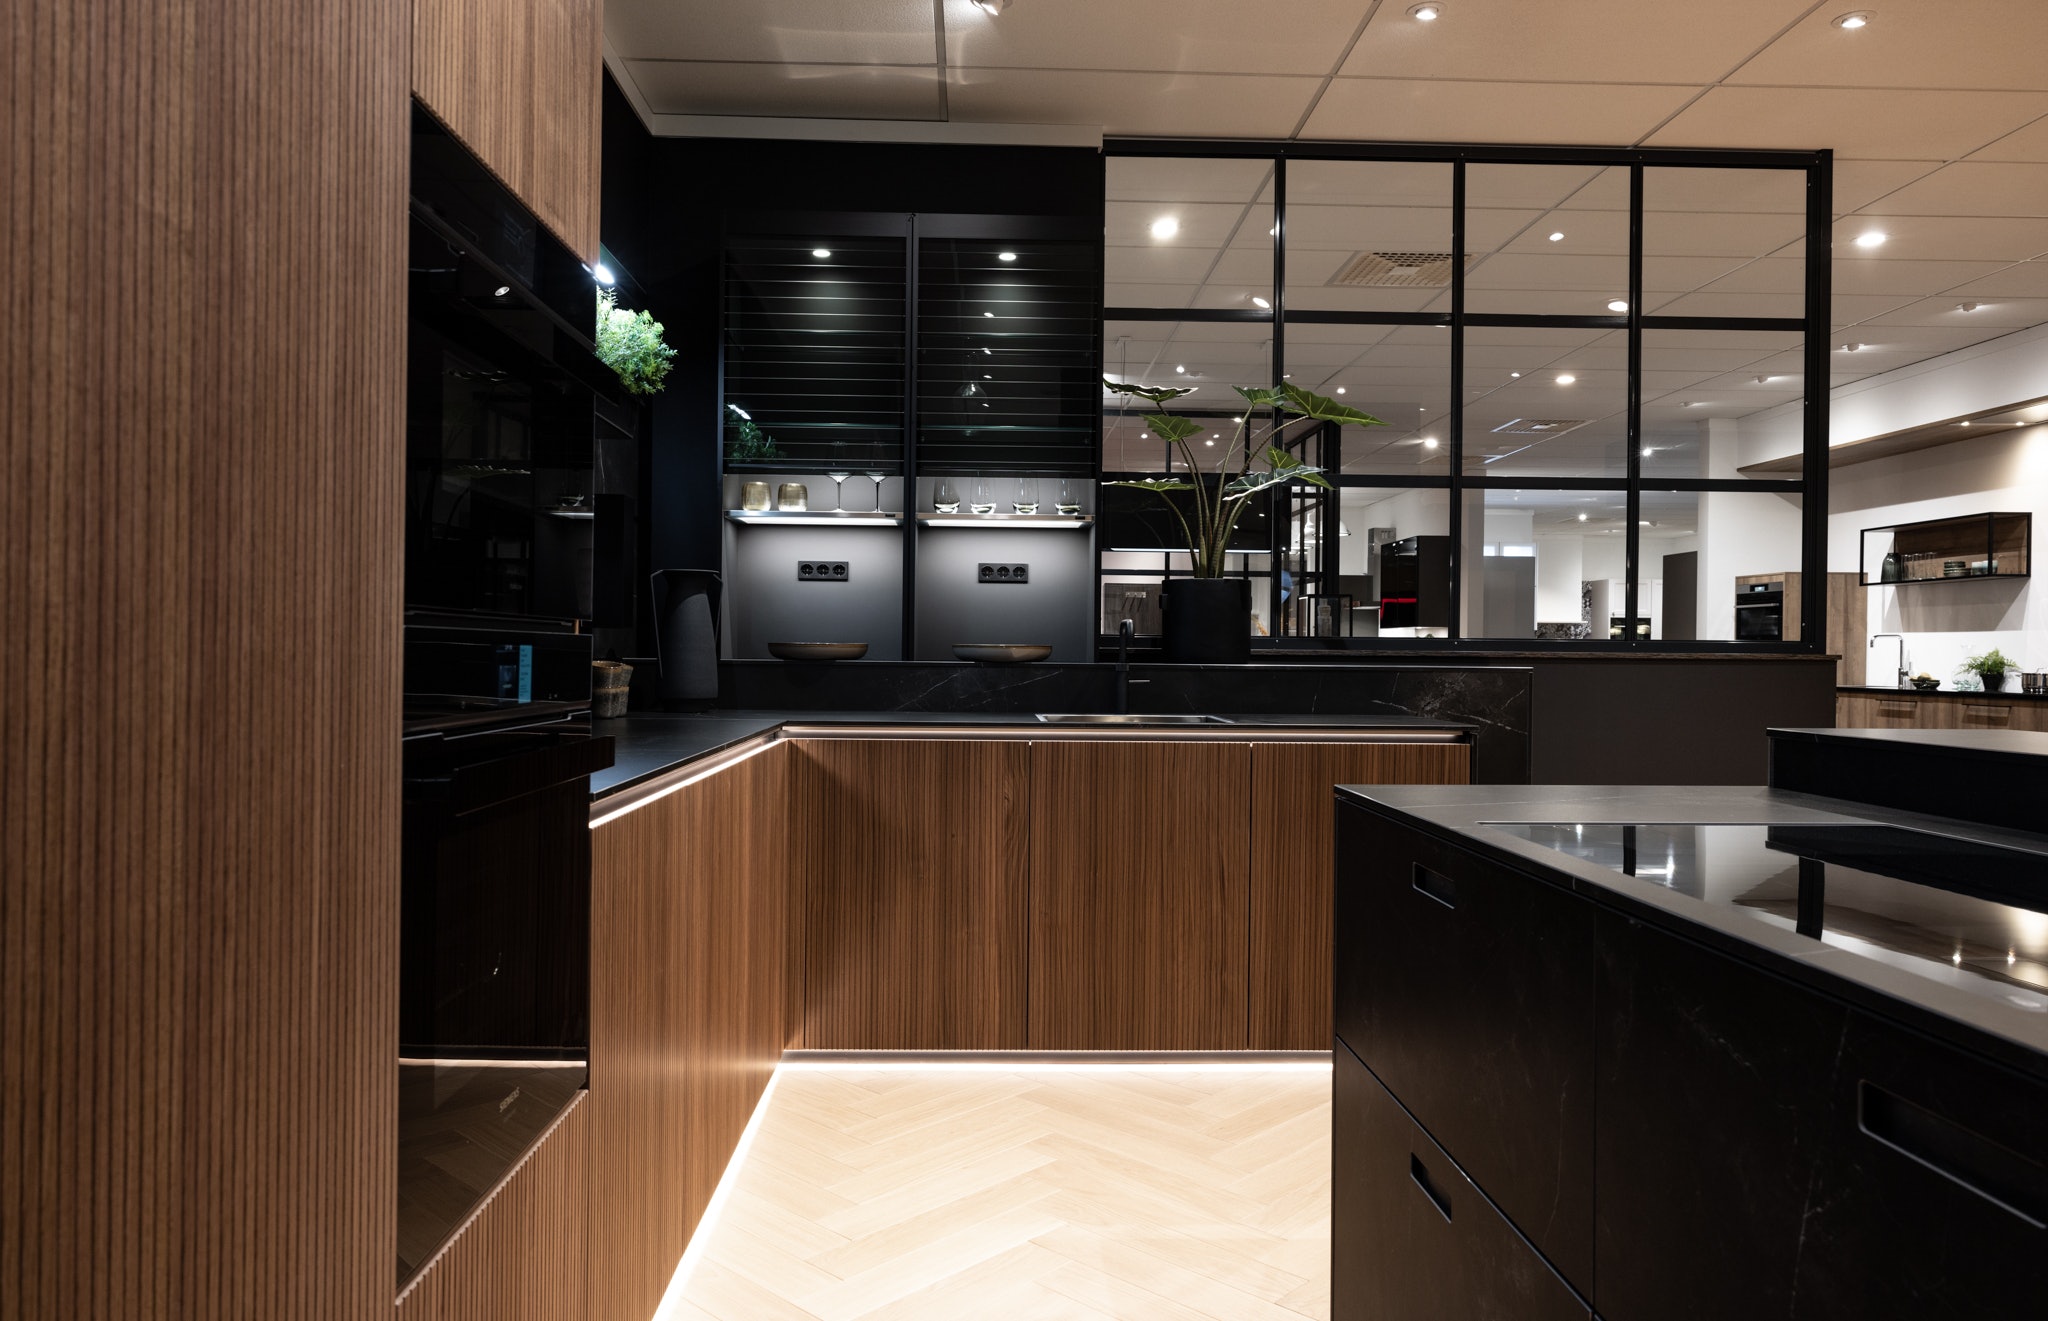 De keramische fronten in de kleur marmer nero imitatie geven deze keuken een luxe en stijlvolle uitstraling.